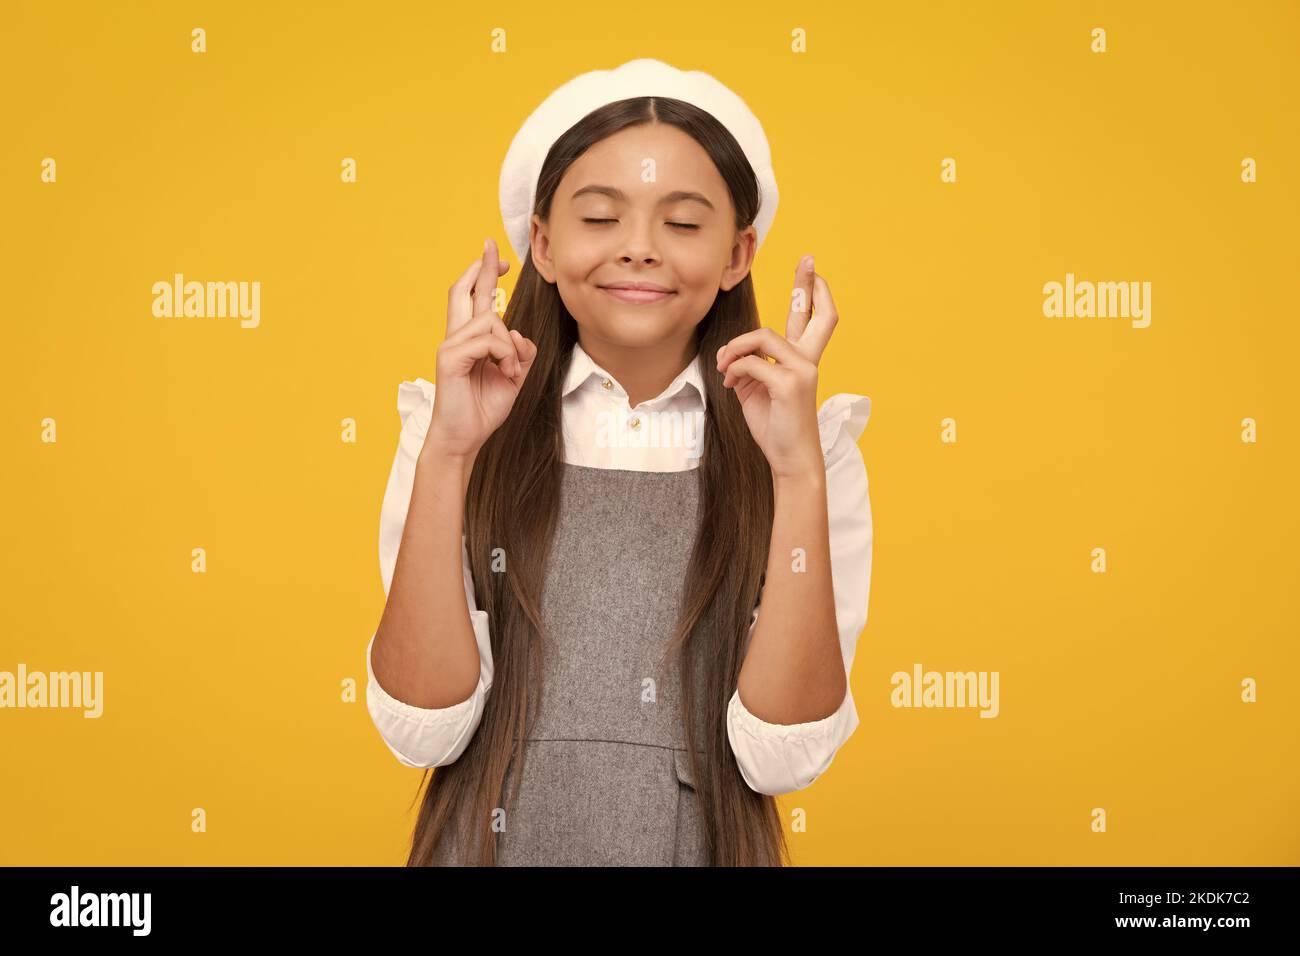 Lustiges Teenager-Kind, das die Daumen für Viel Glück. drückt Mädchen betet und hofft, dass Träume wahr werden, isoliert auf gelbem Hintergrund. Stockfoto